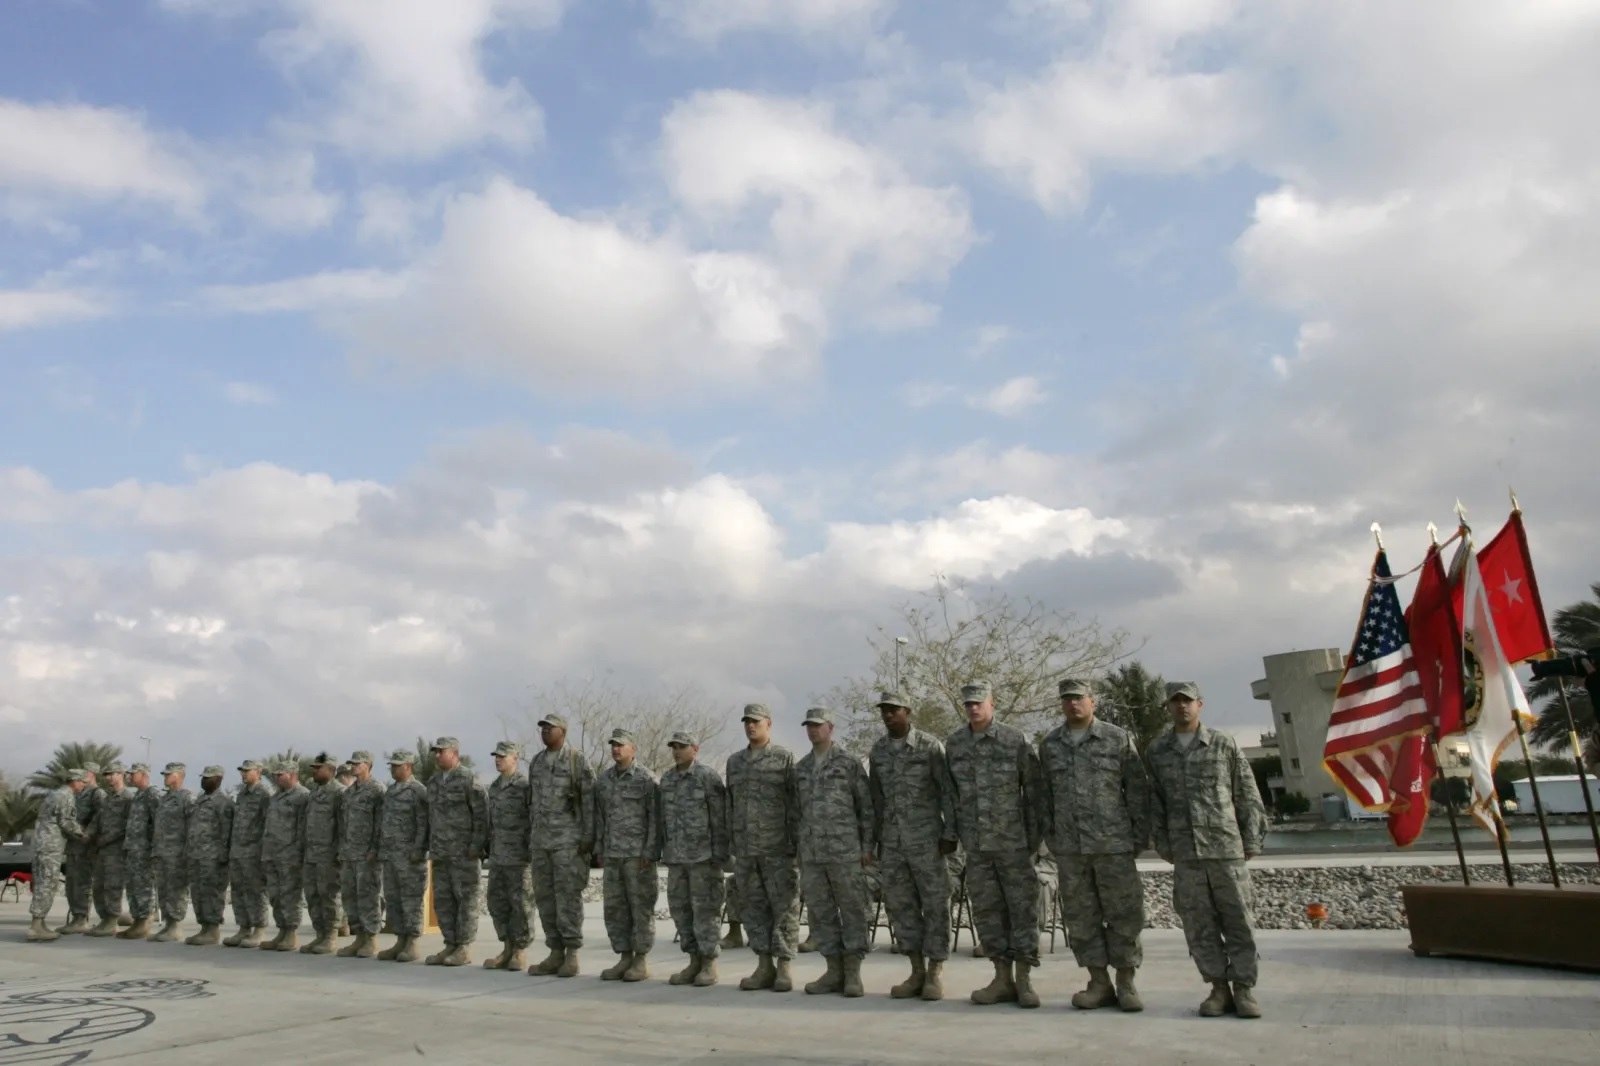 الجنرال الأميركي ديفيد بتريوس (في أقصى اليسار) يجتمع مع جنود أميركيين في بغداد، يناير 2008 (سيروان عزيز/ رويترز)